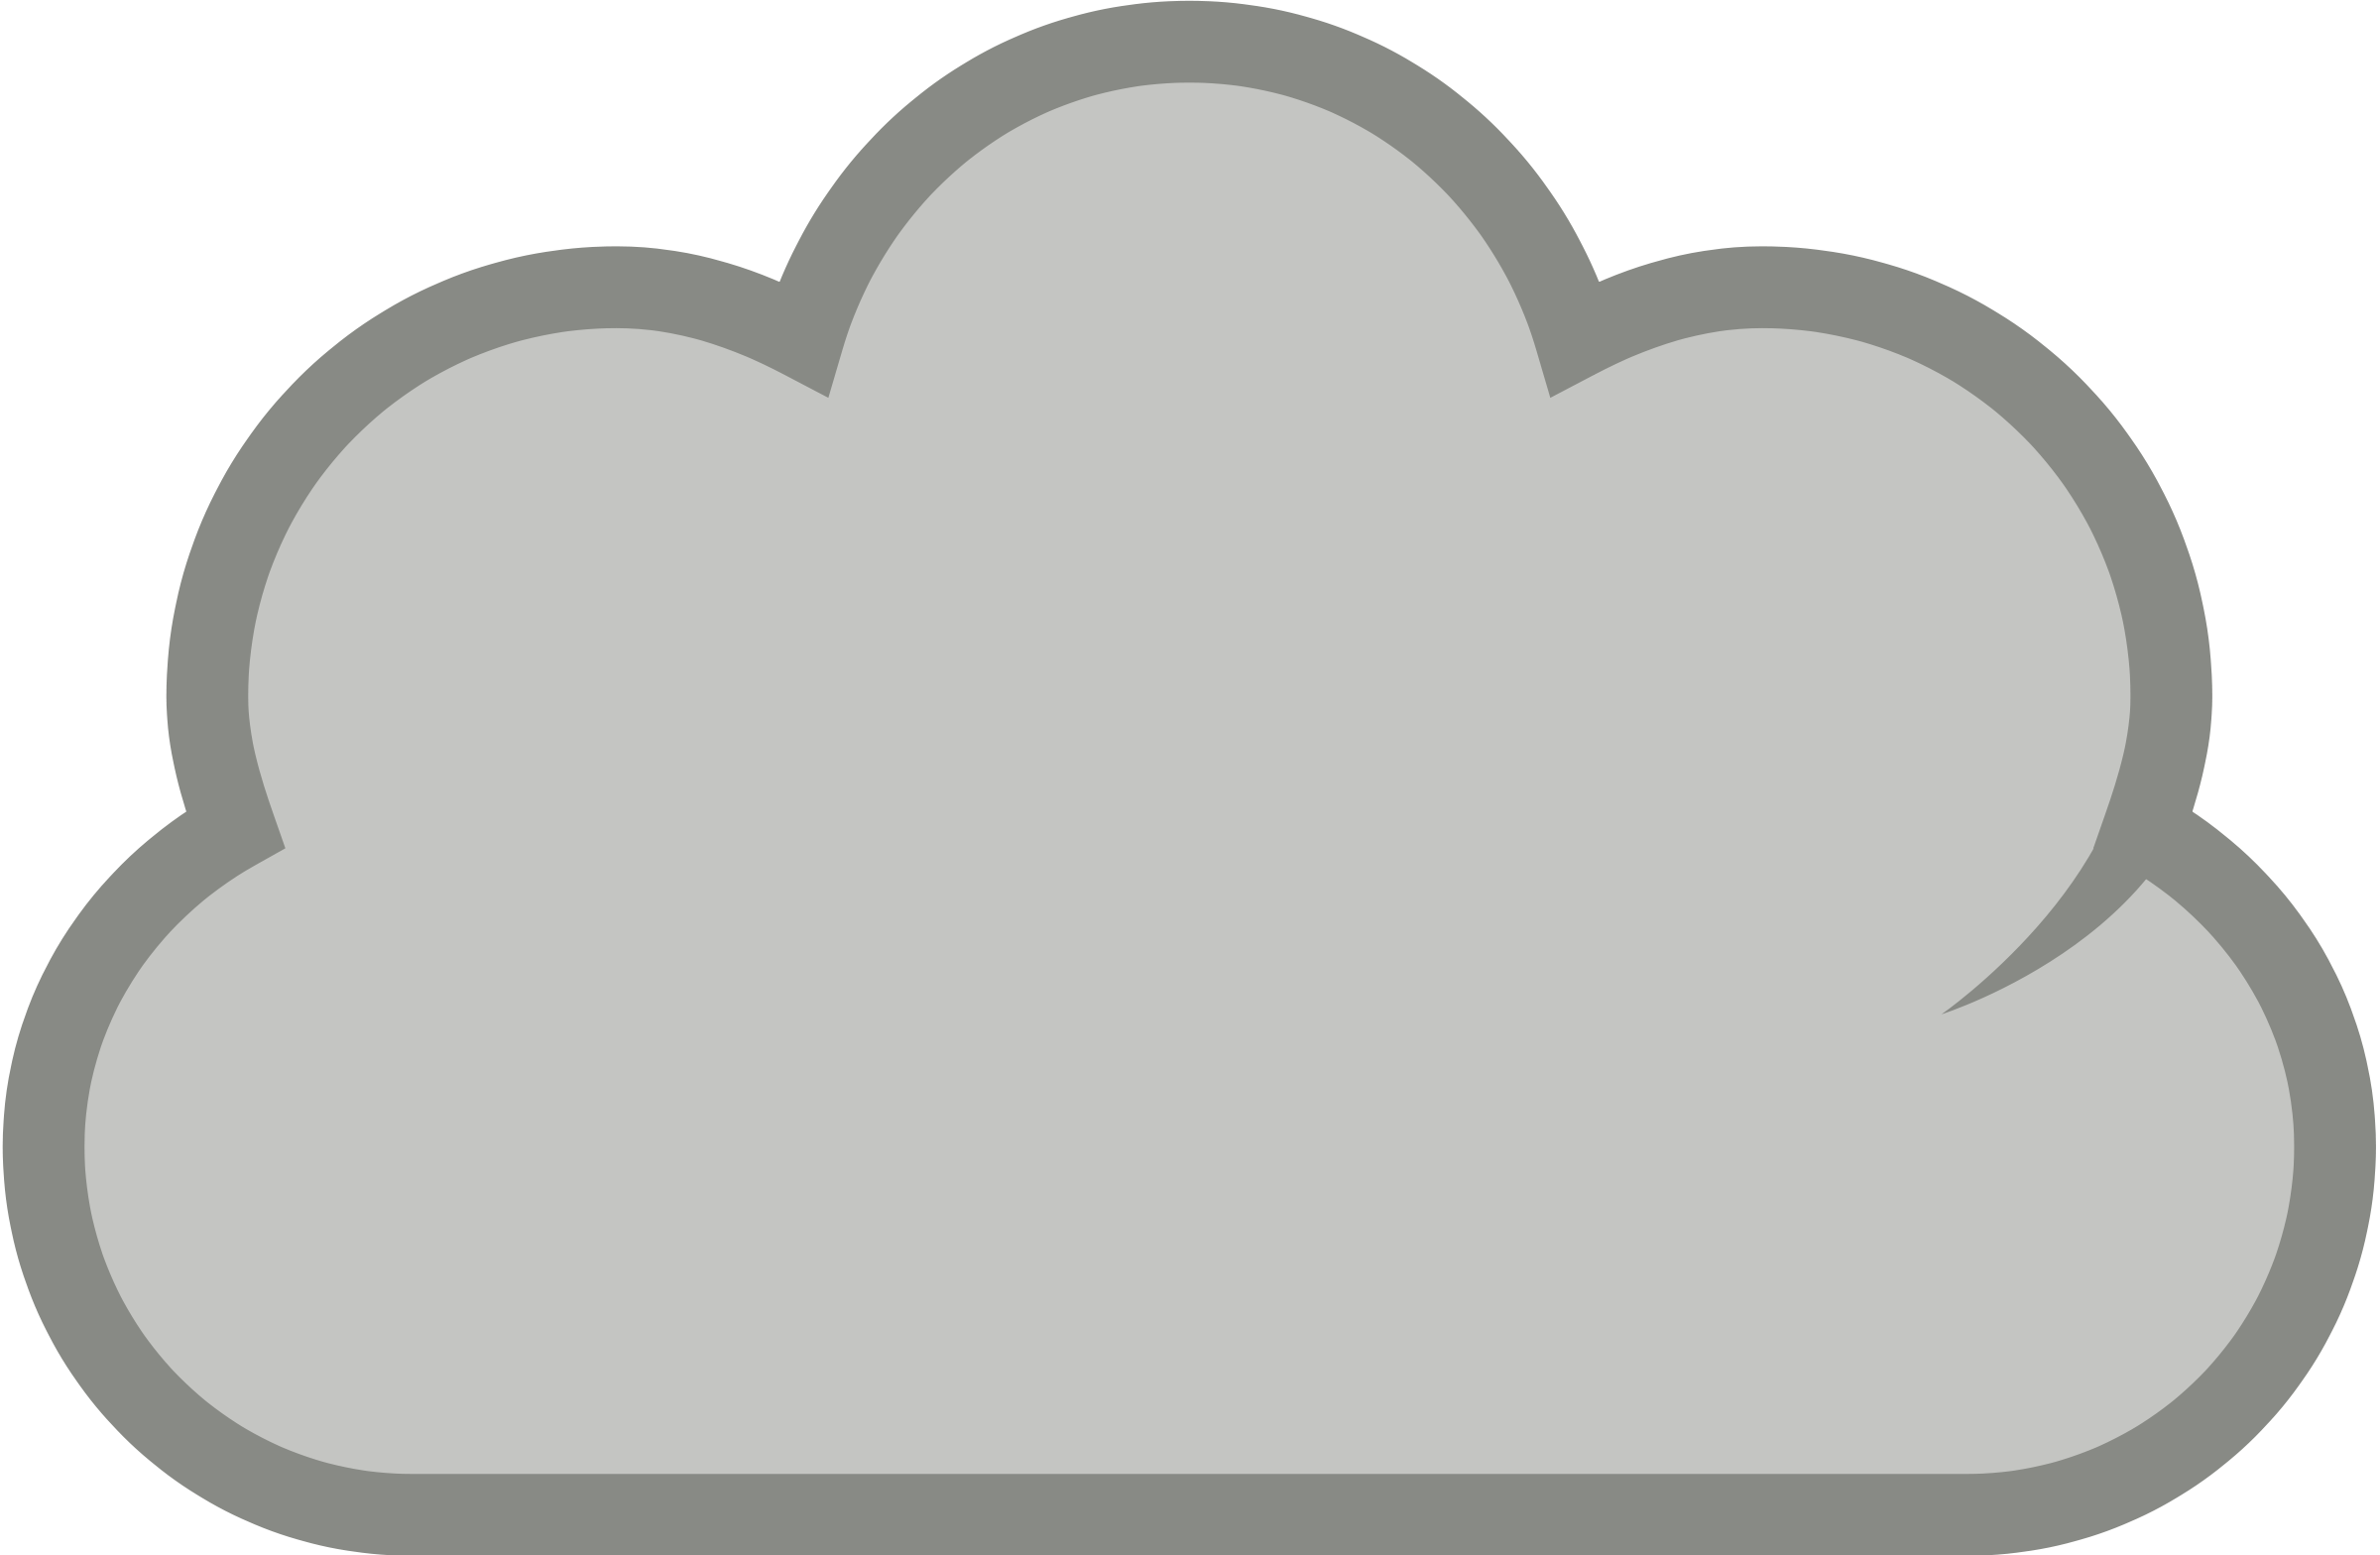 Cloud clip art outline. Clouds clipart simple